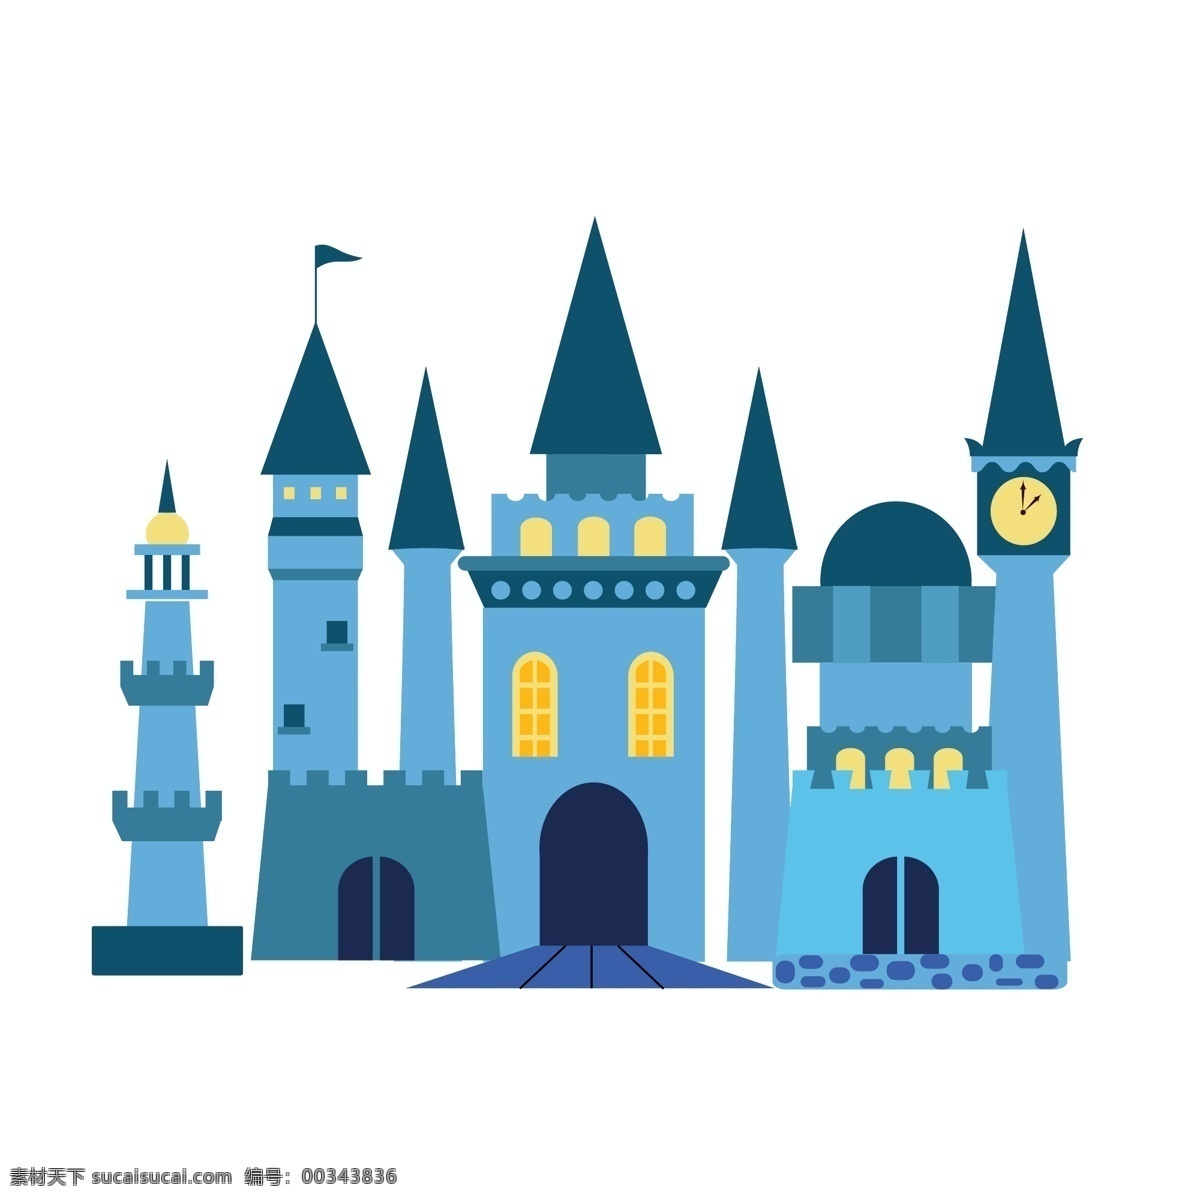 矢量蓝色城堡 矢量城堡 矢量 蓝色城堡 城堡 童话 共享素材 标志图标 网页小图标